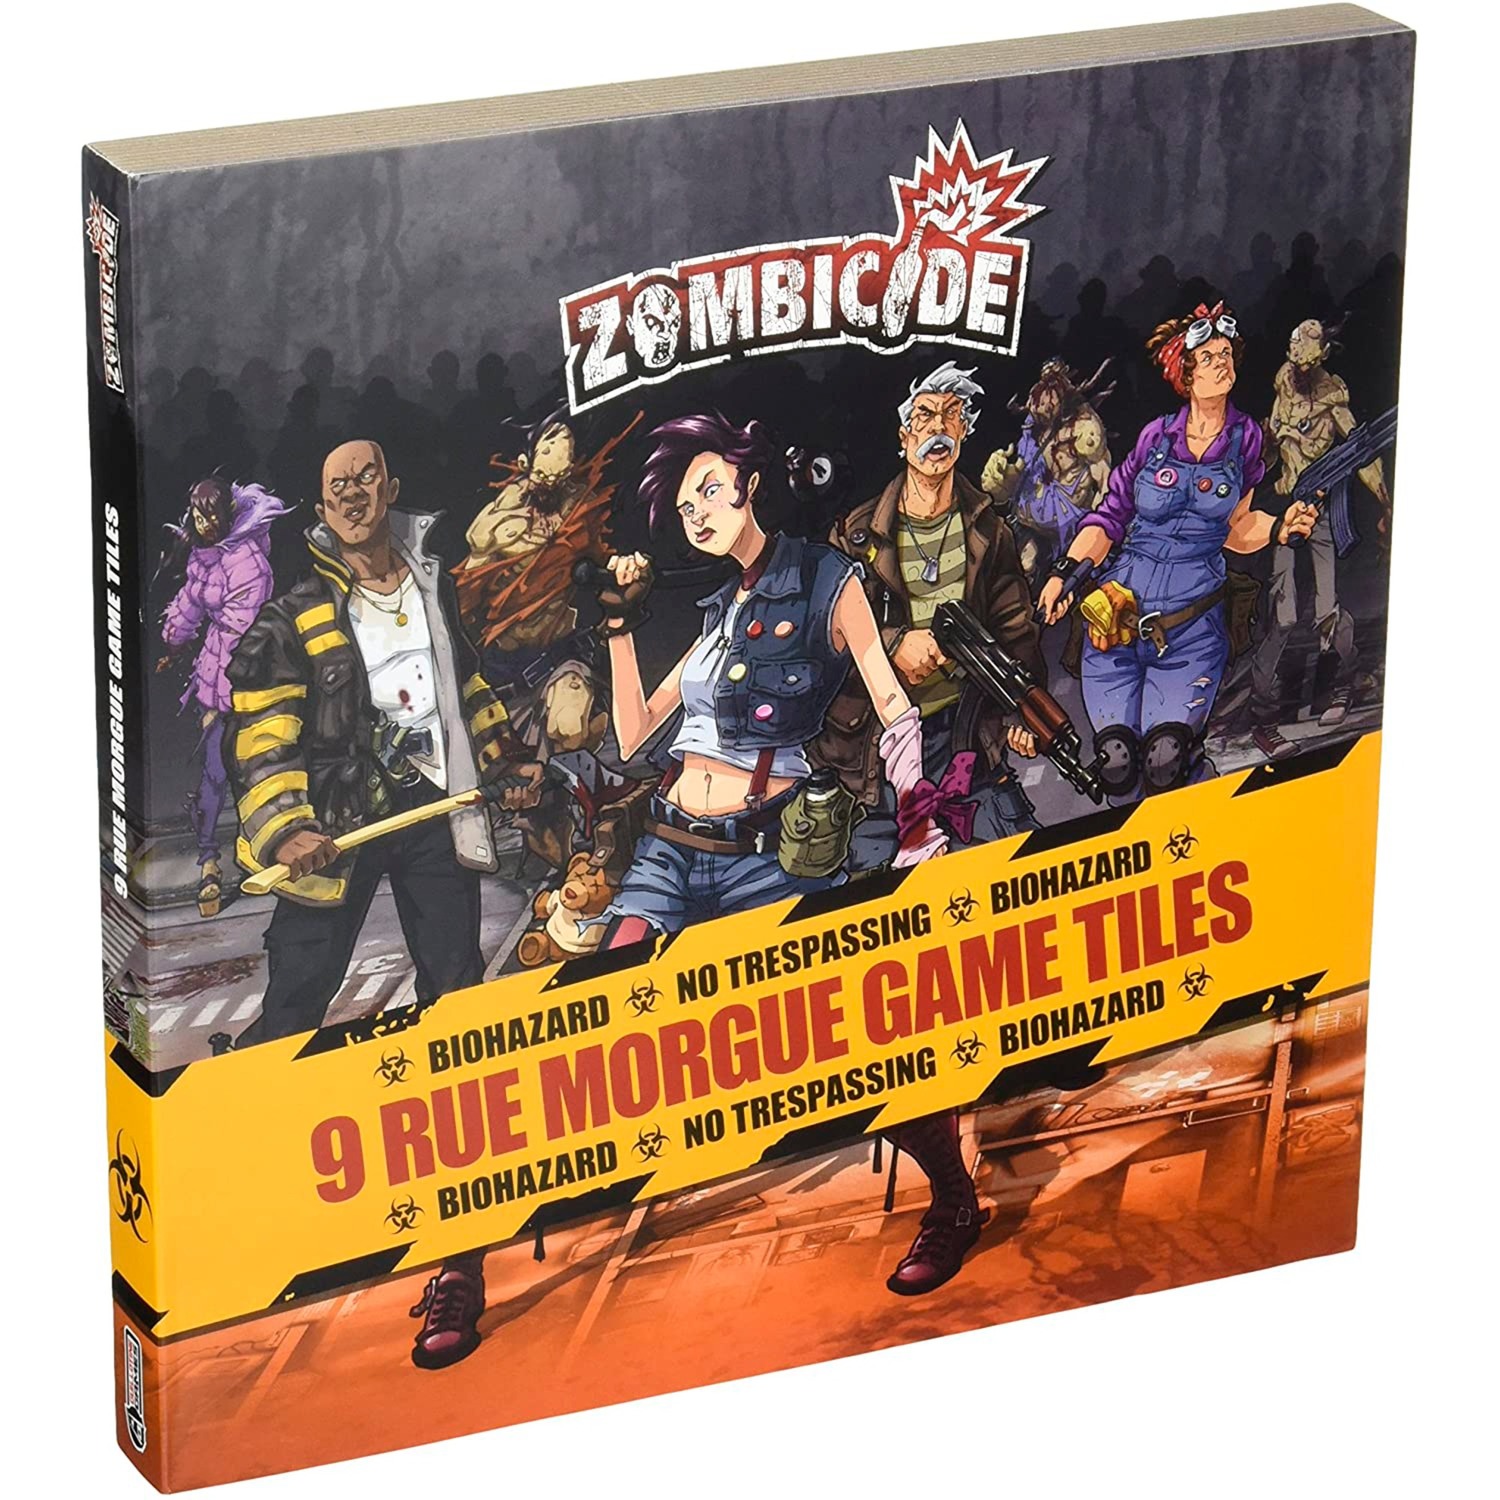 Image of Alternate - Zombicide: 9 Rue Morgue Game Tiles, Brettspiel online einkaufen bei Alternate